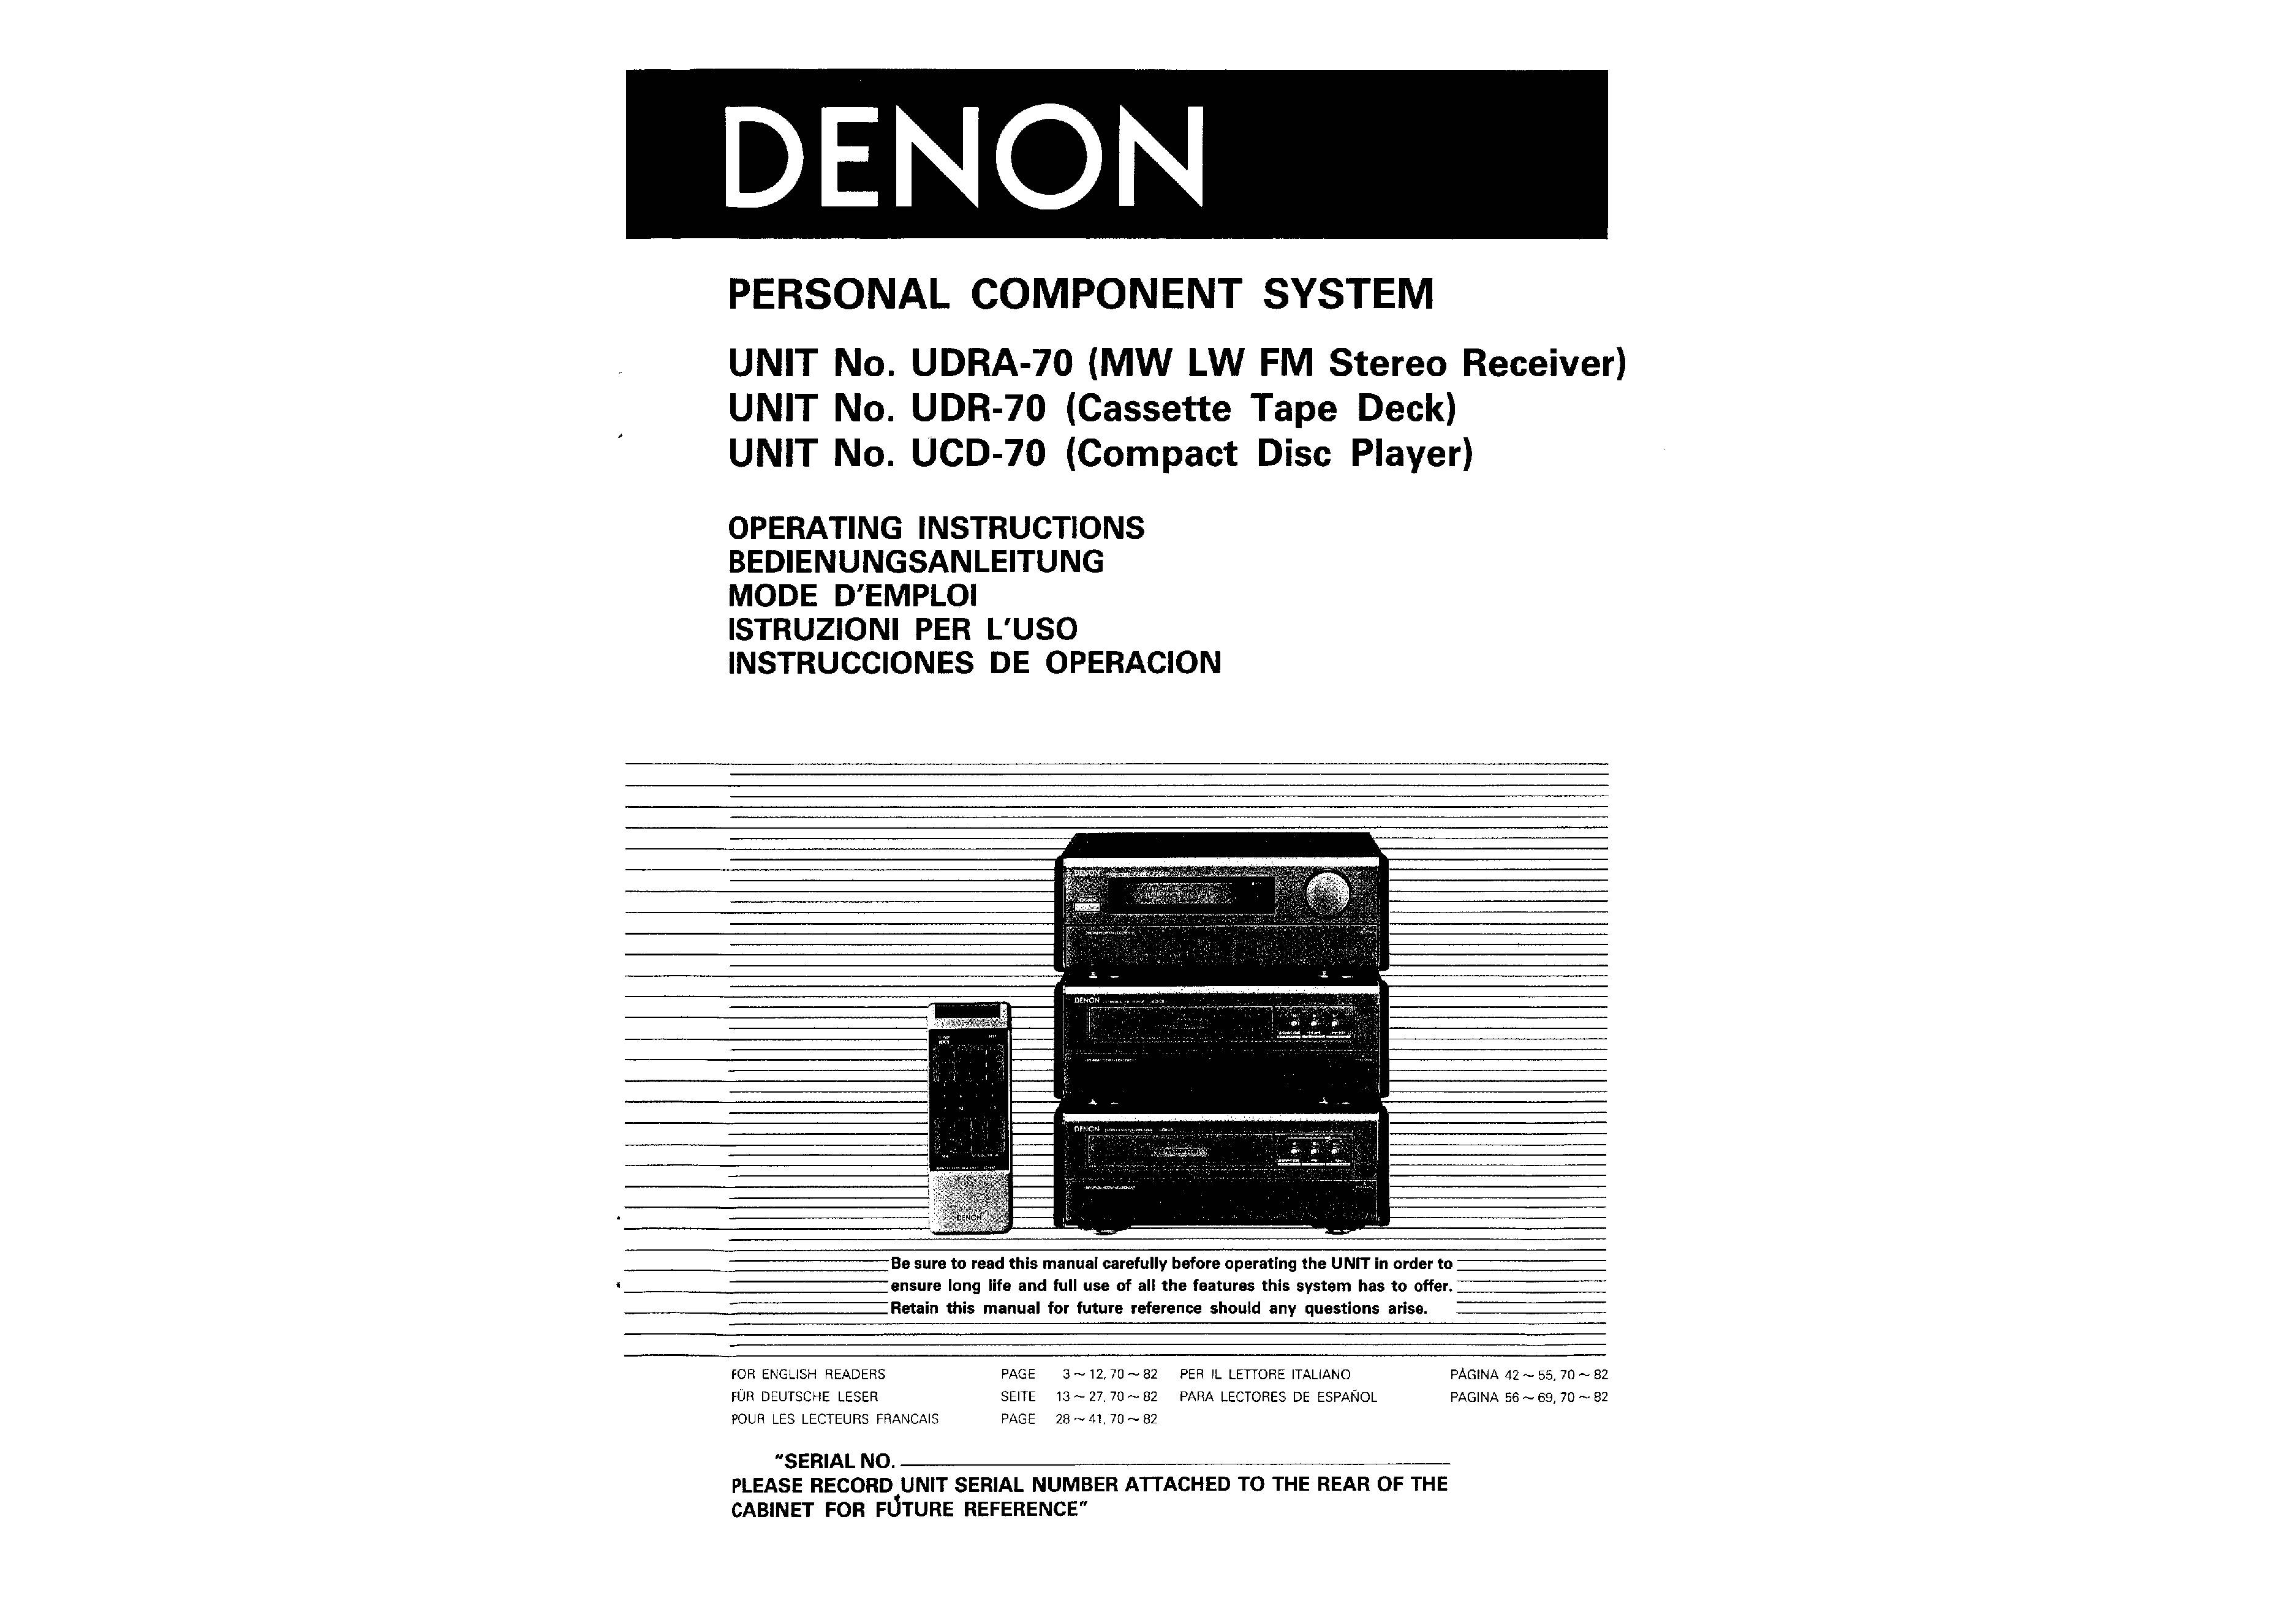 Denon UDR-70